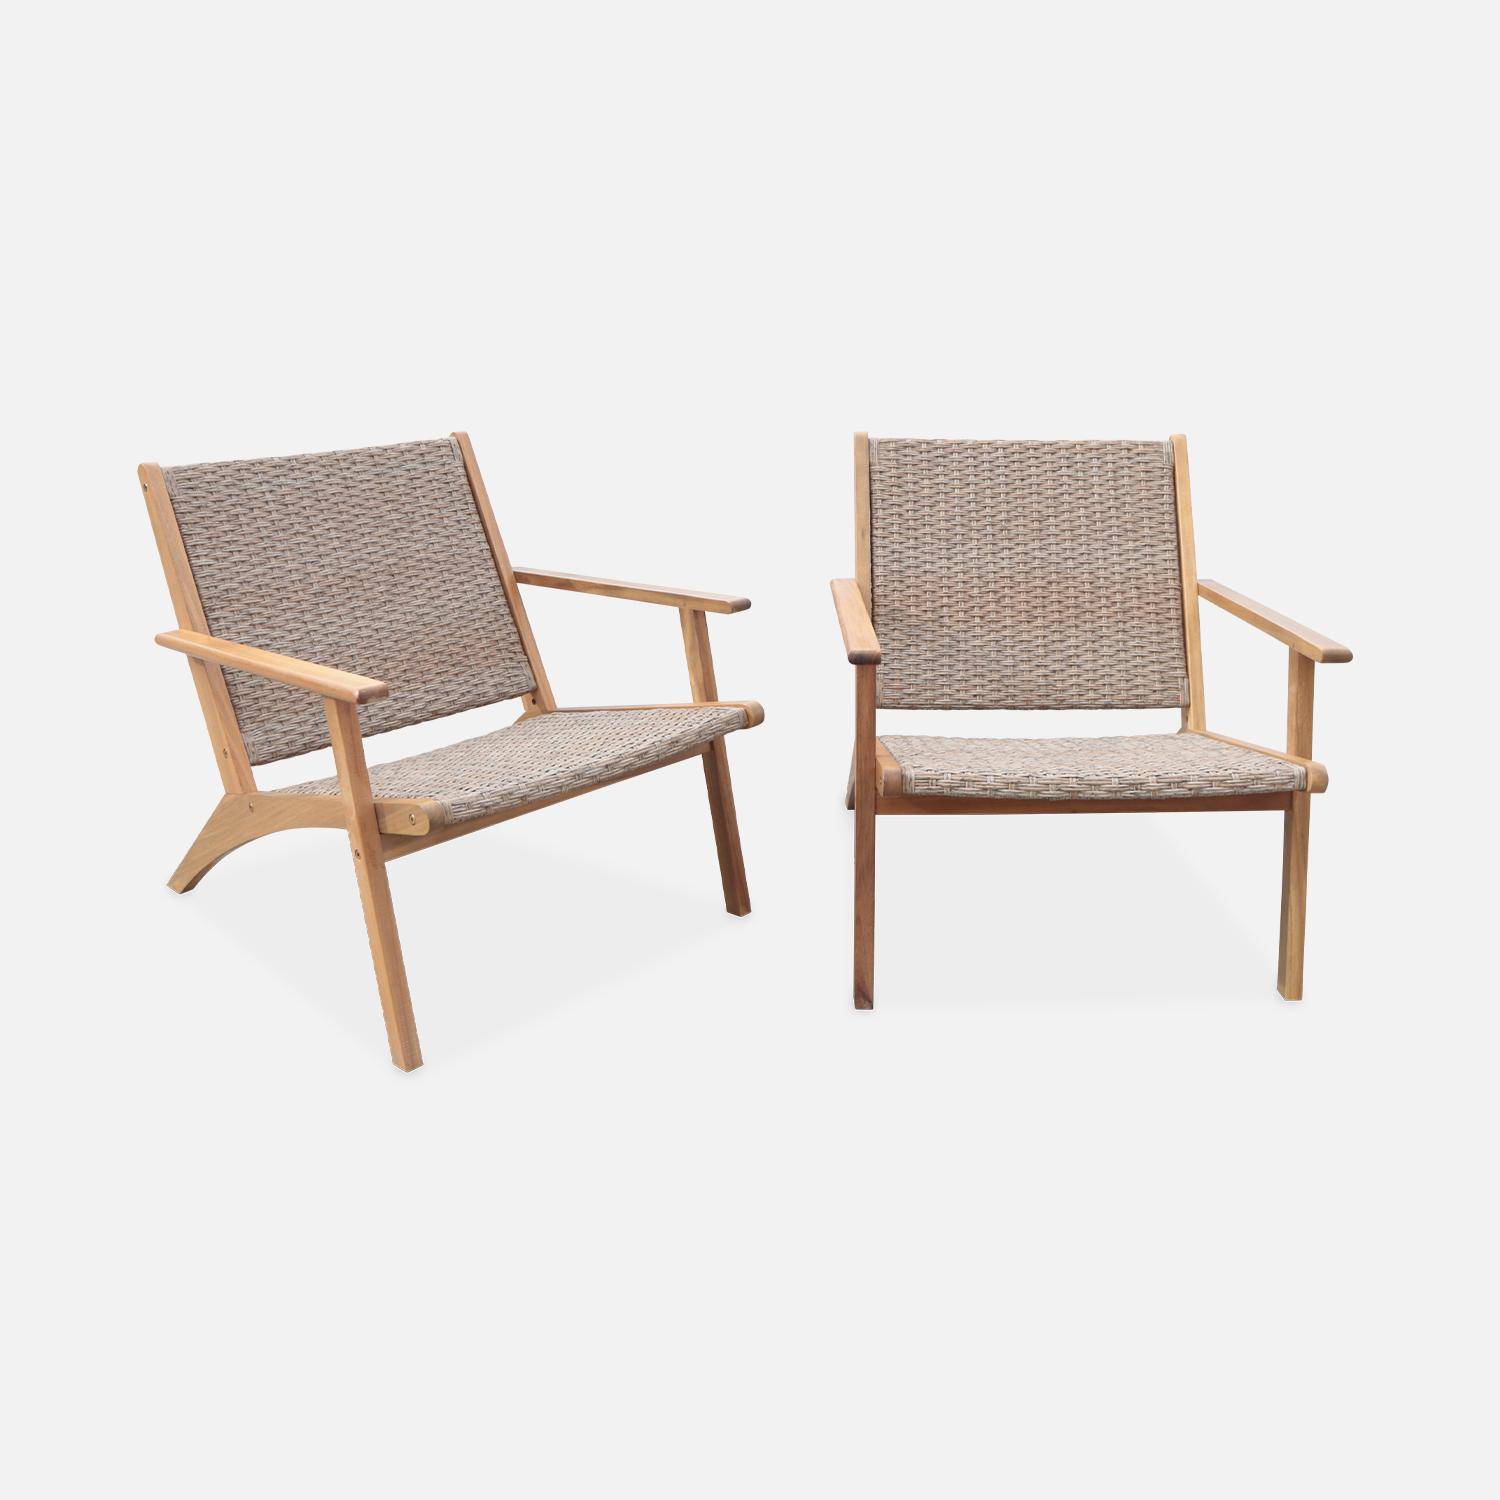 Lot de 2 fauteuils Belize en bois et résine, 62 x 78 x 67 cm Photo4